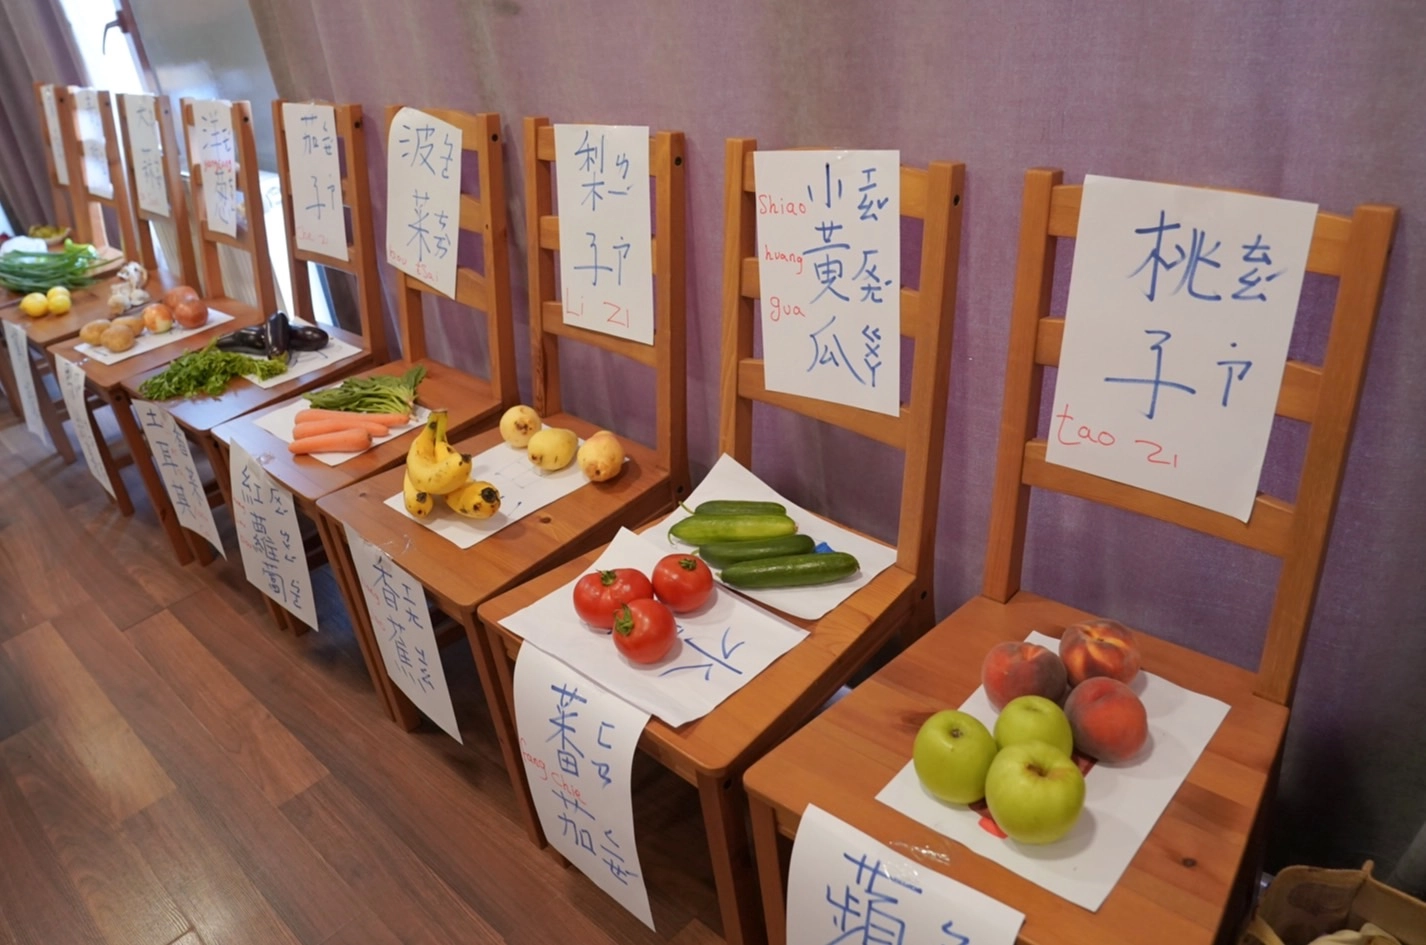  排列整齊的蔬果區讓學生們眼睛為之一亮。